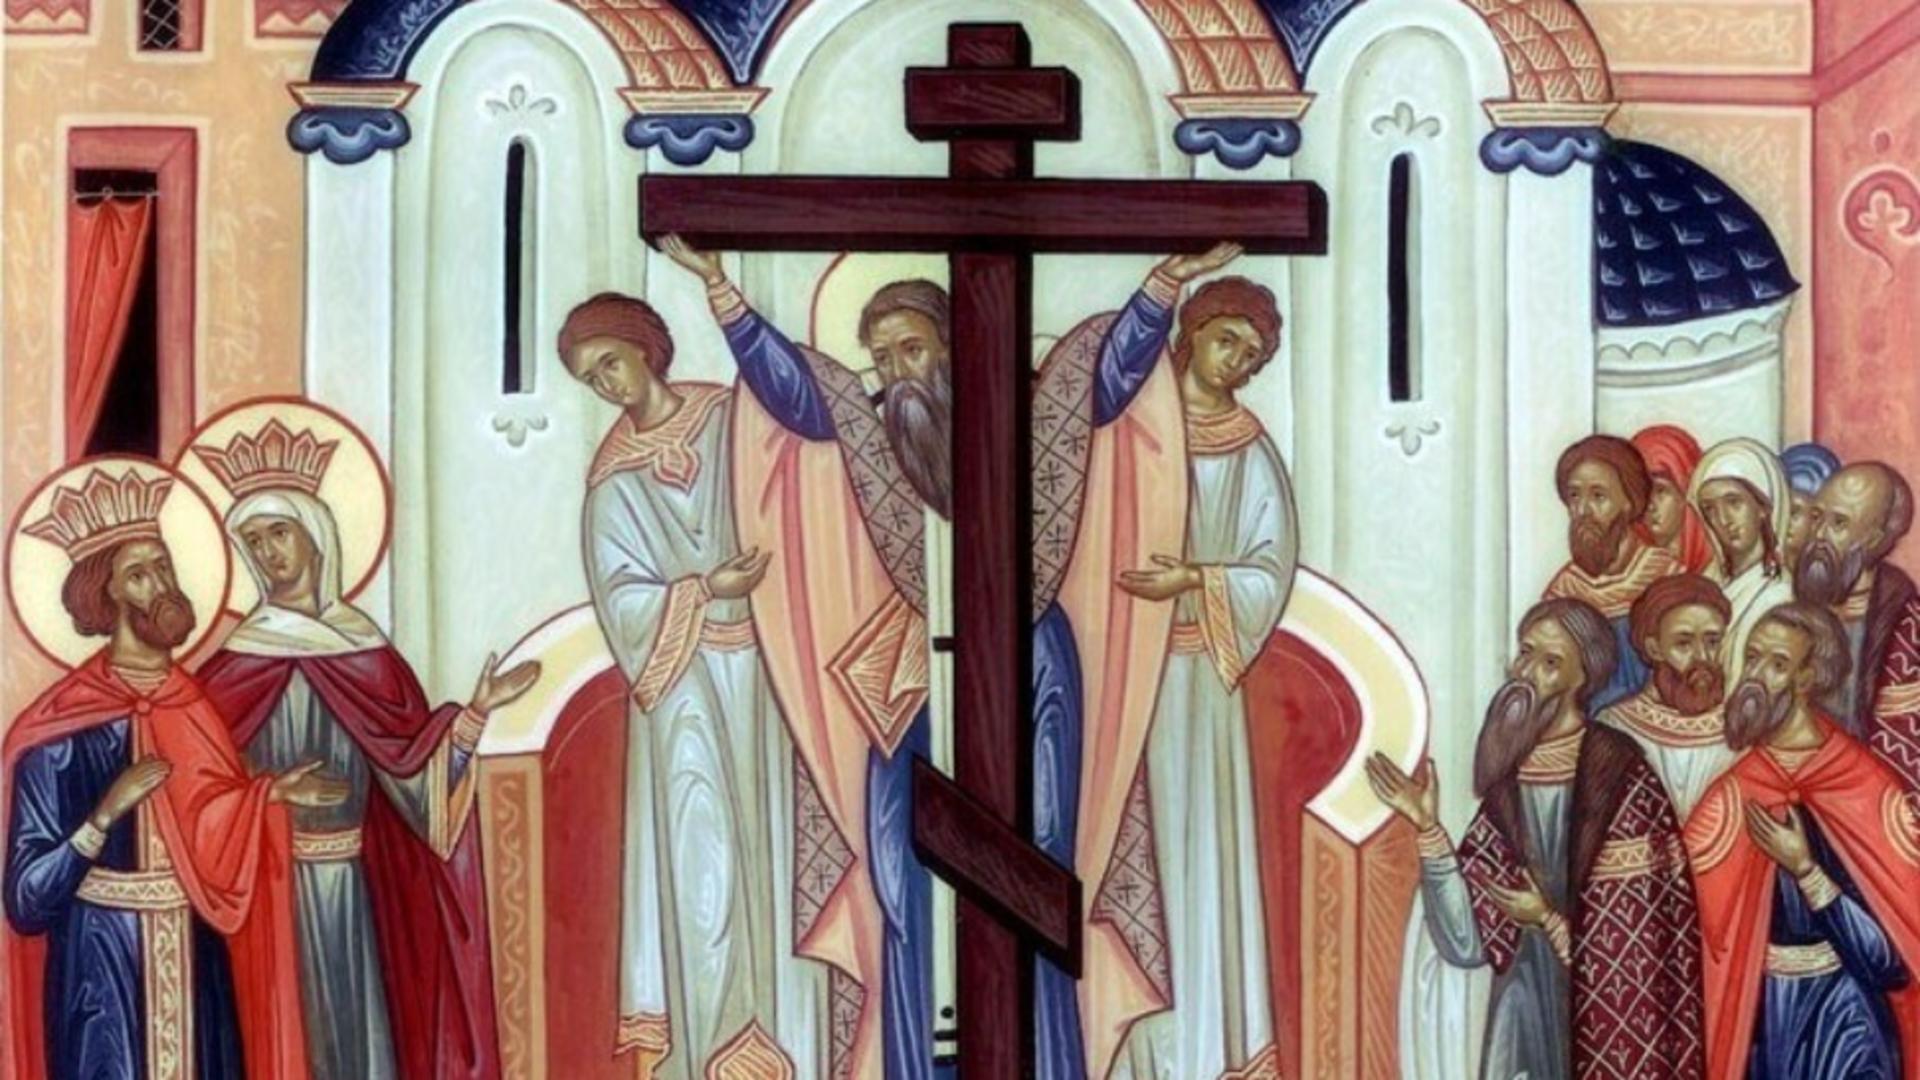 Sărbătoare 15 septembrie: Este sărbătoare mare în Biserica Ortodoxă! – Zi cu cruce roșie